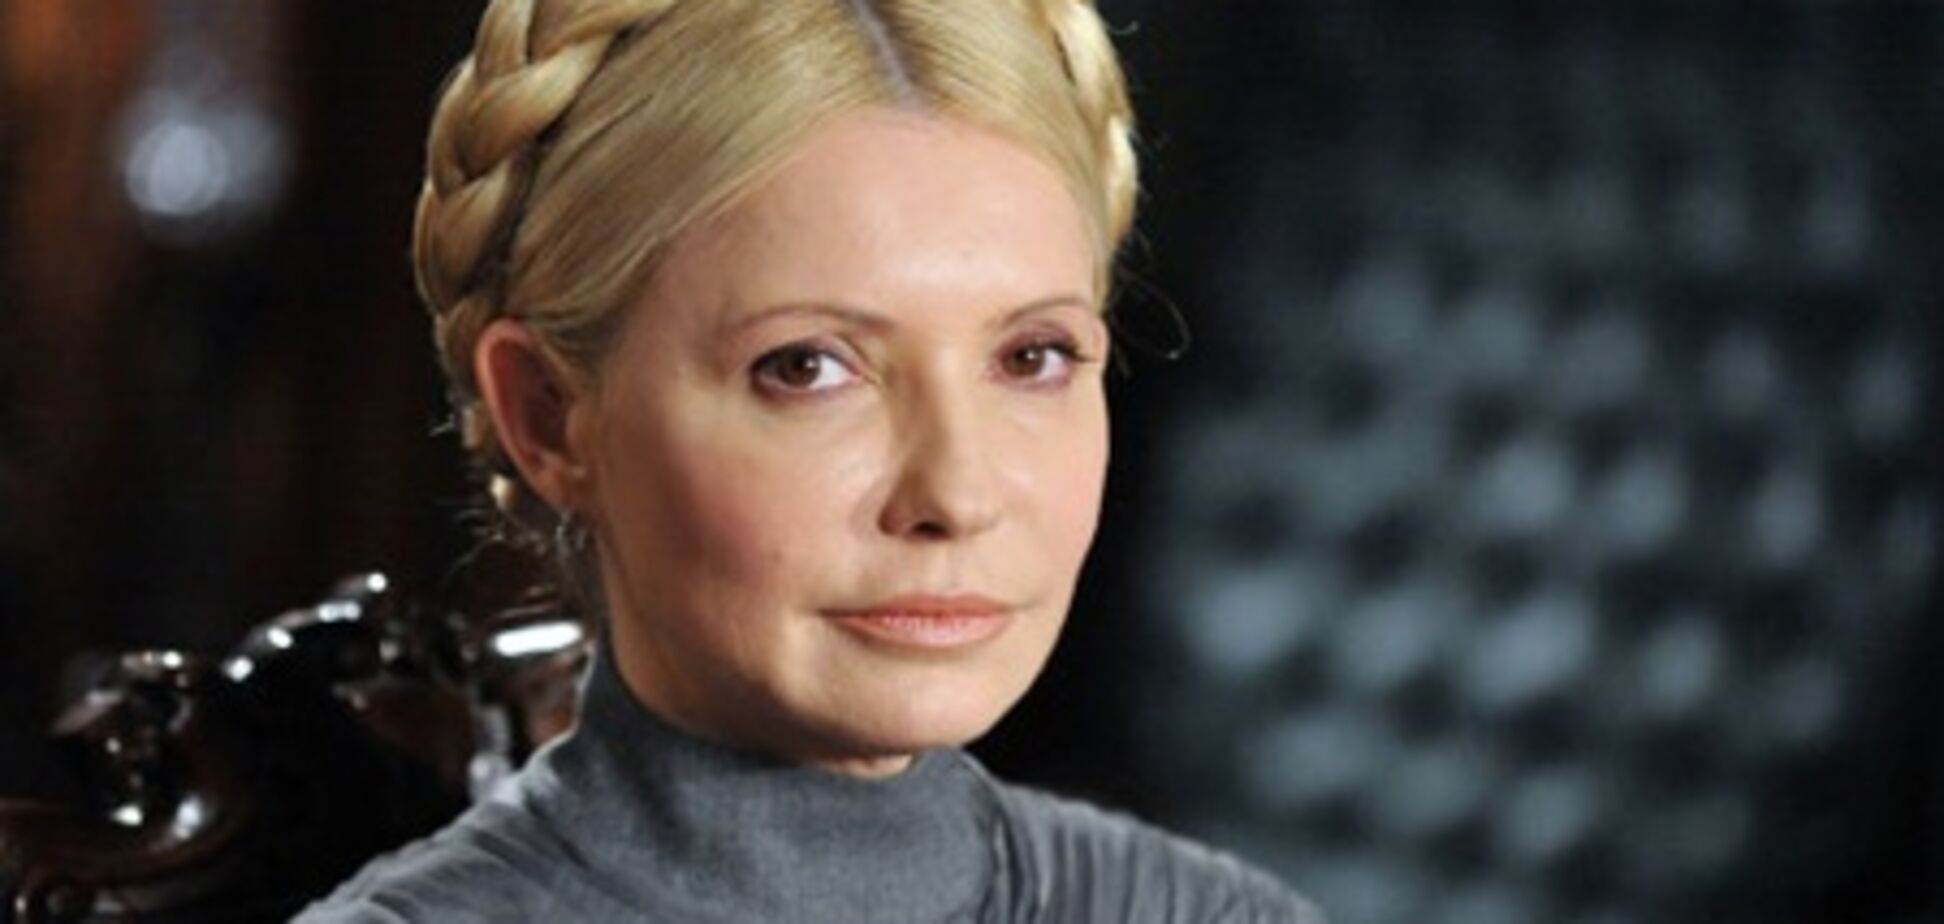 ГПтС:  Тимошенко требует доставить ее в суд на носилках, потому что 'так надо'